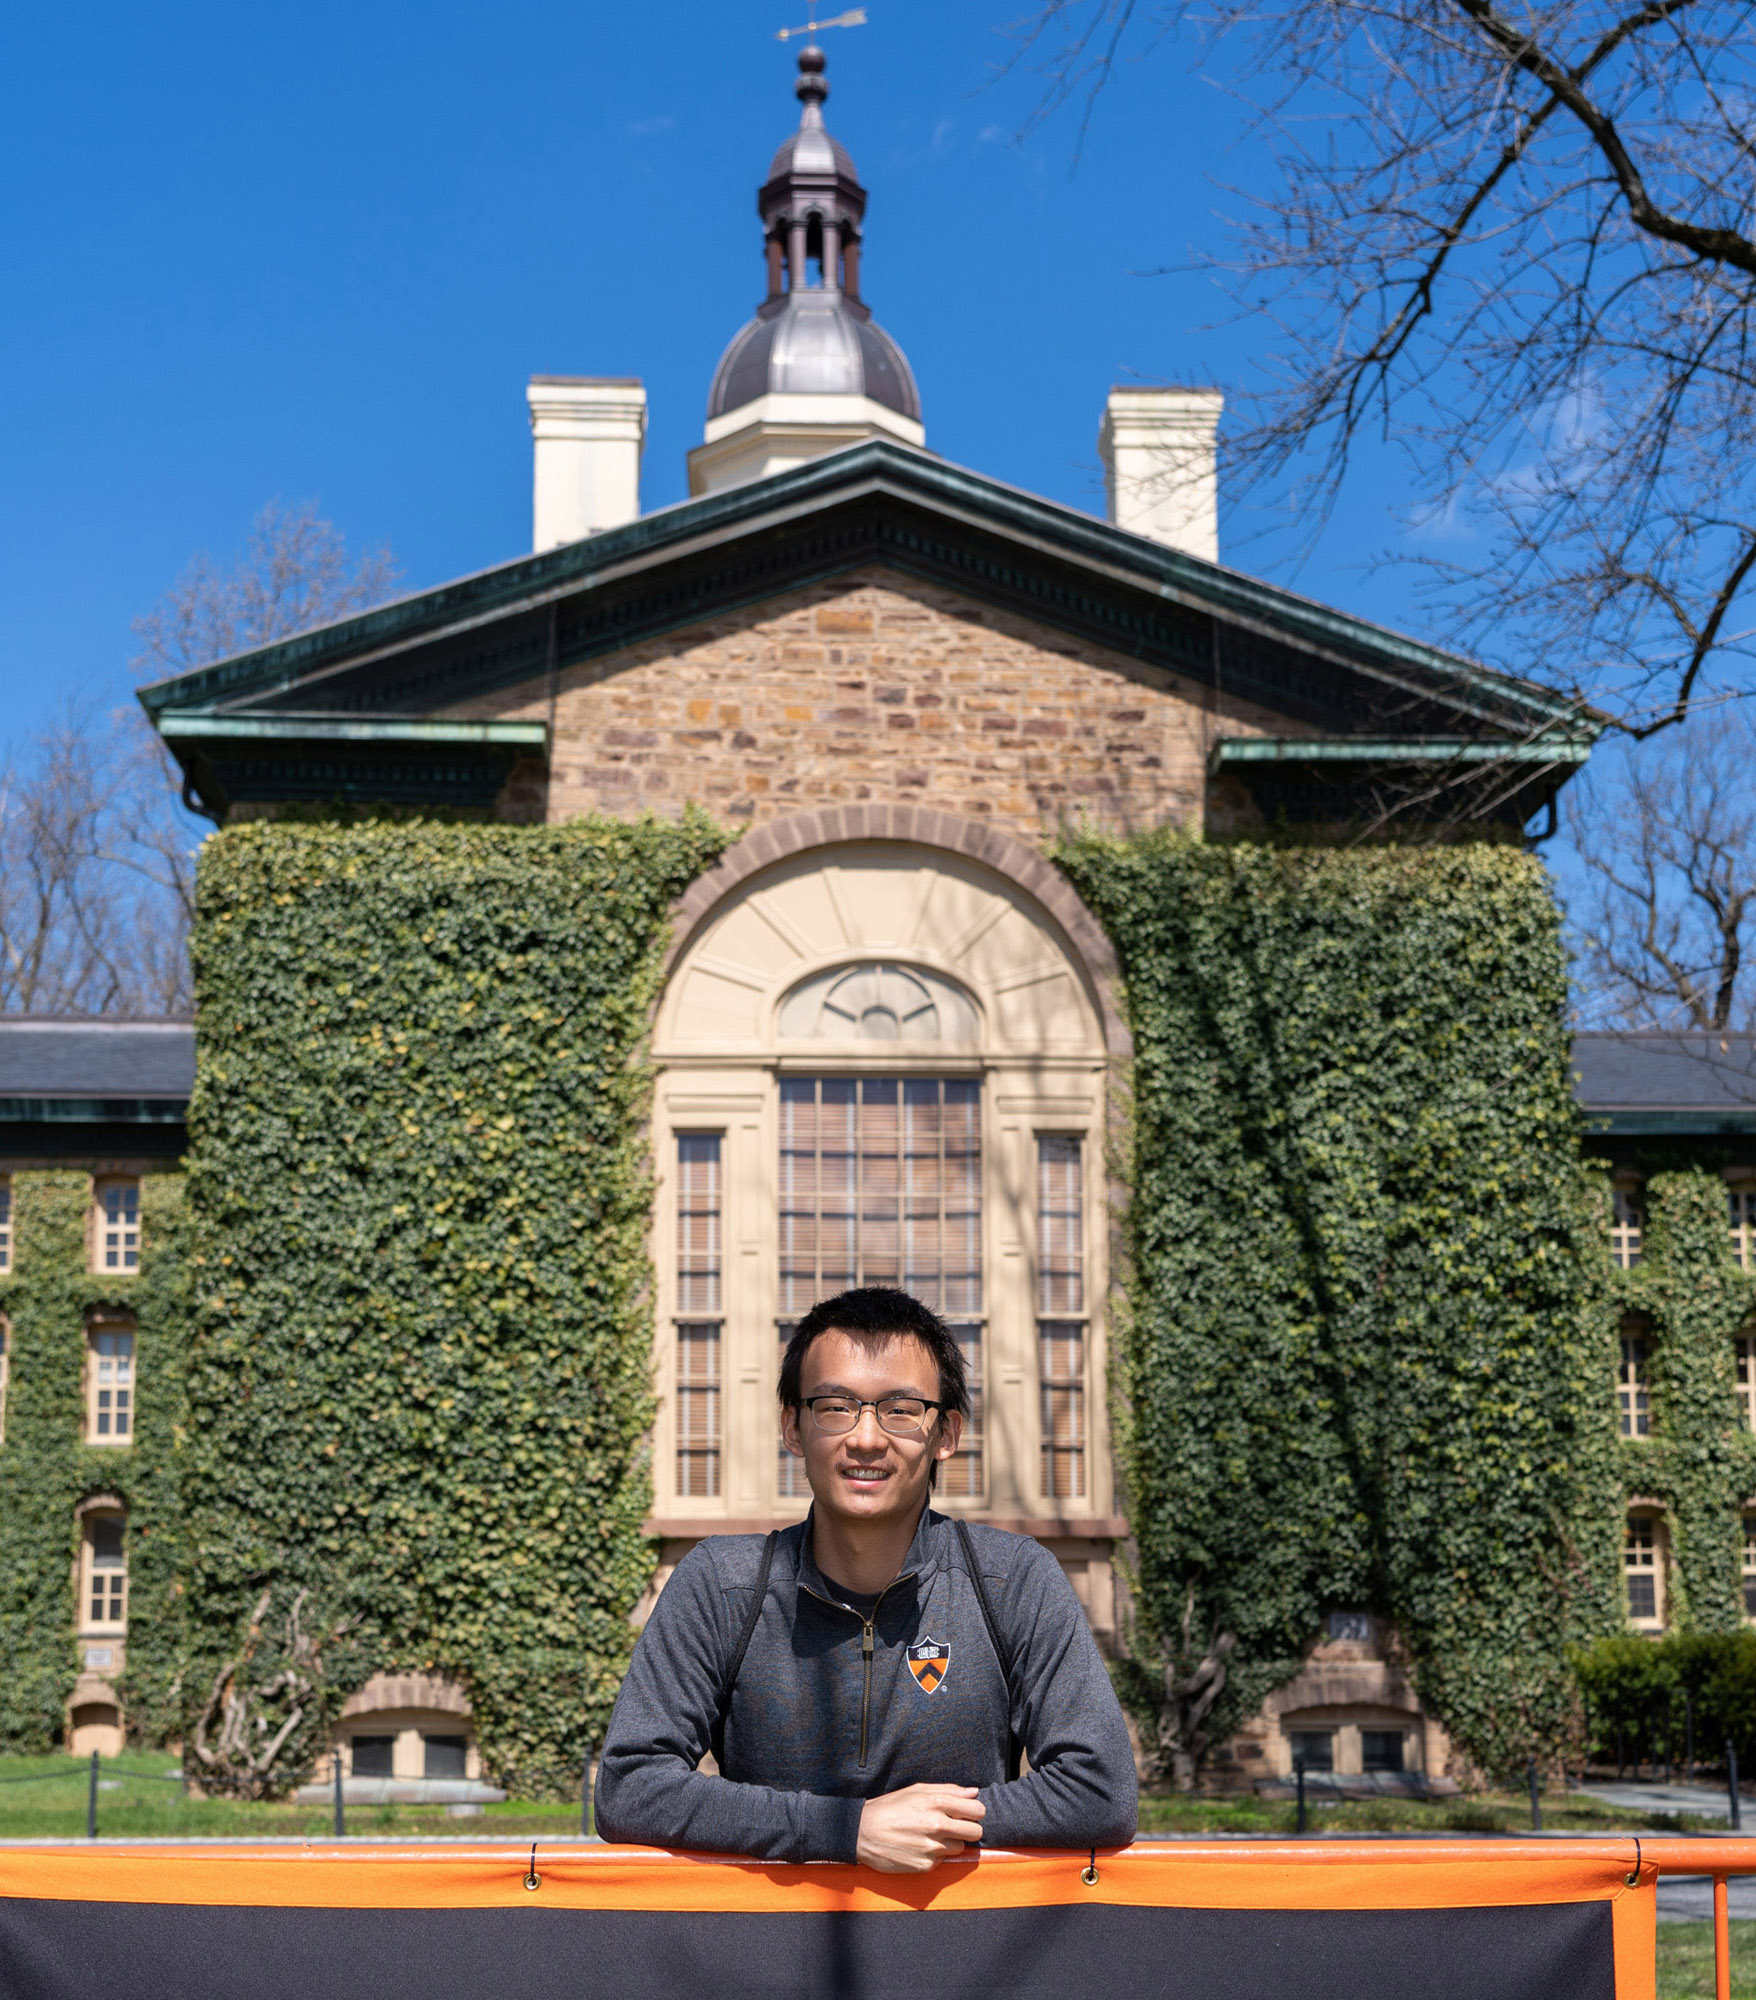 Vergrösserte Ansicht: Daniel Yang steht vor der Nassau Hall, einem mit Efeu bewachsenen neugotischen Gebäude